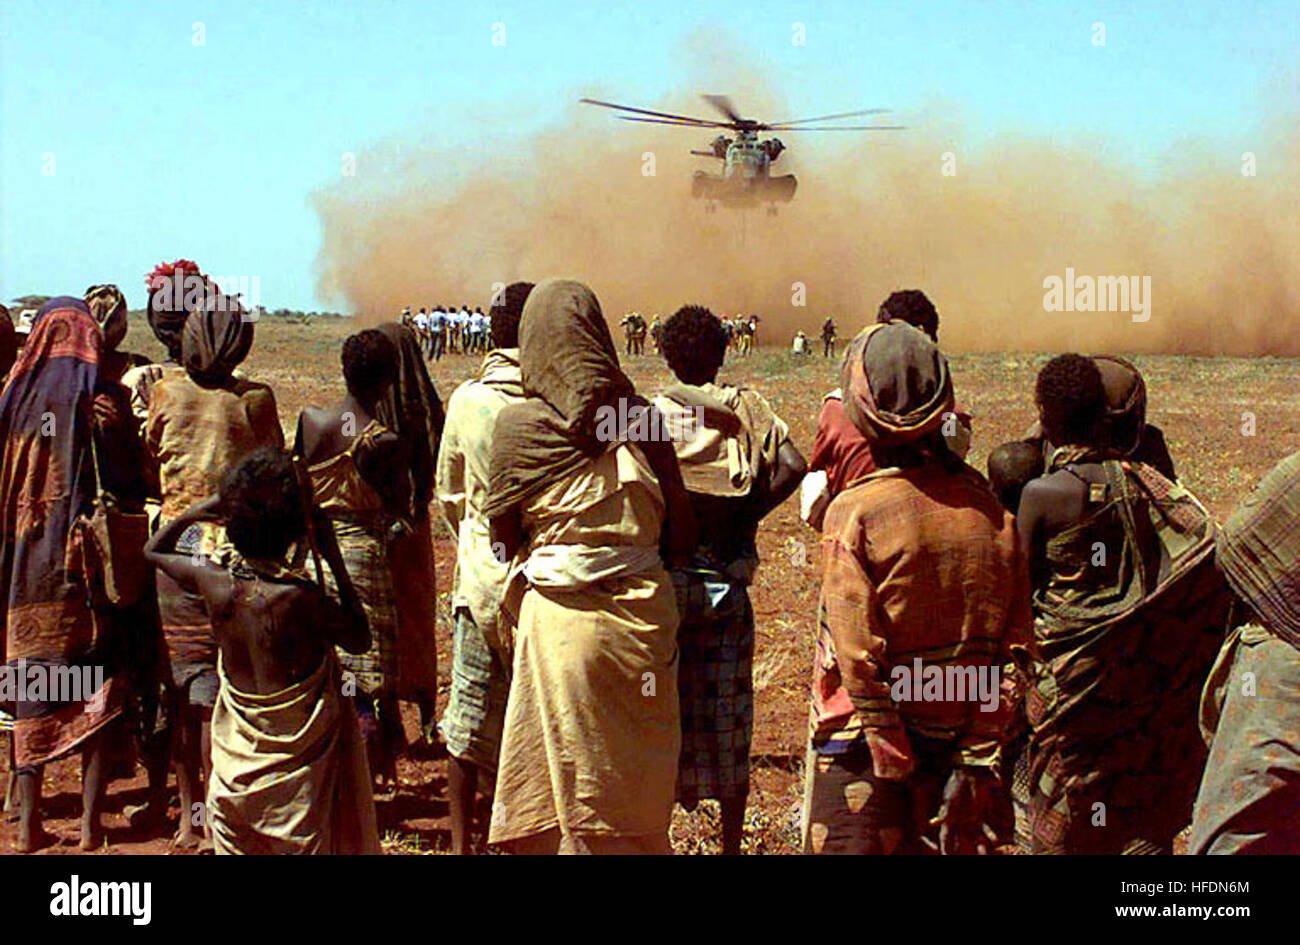 L'appareil photo shoots passé certains Somaliens du village de Maleel comme ils regardent un Marine américain CH-53 Sea Stallion offrir une charge de blé donnés par les habitants de l'Australie. Plusieurs hommes Somaliens et des soldats de l'armée australienne attendre près de la zone de chargement où l'hélicoptère rotor donne de grandes quantités de terre rouge. Cette mission est en appui direct à l'Opération Restore Hope. Blé aus en Somalie Banque D'Images